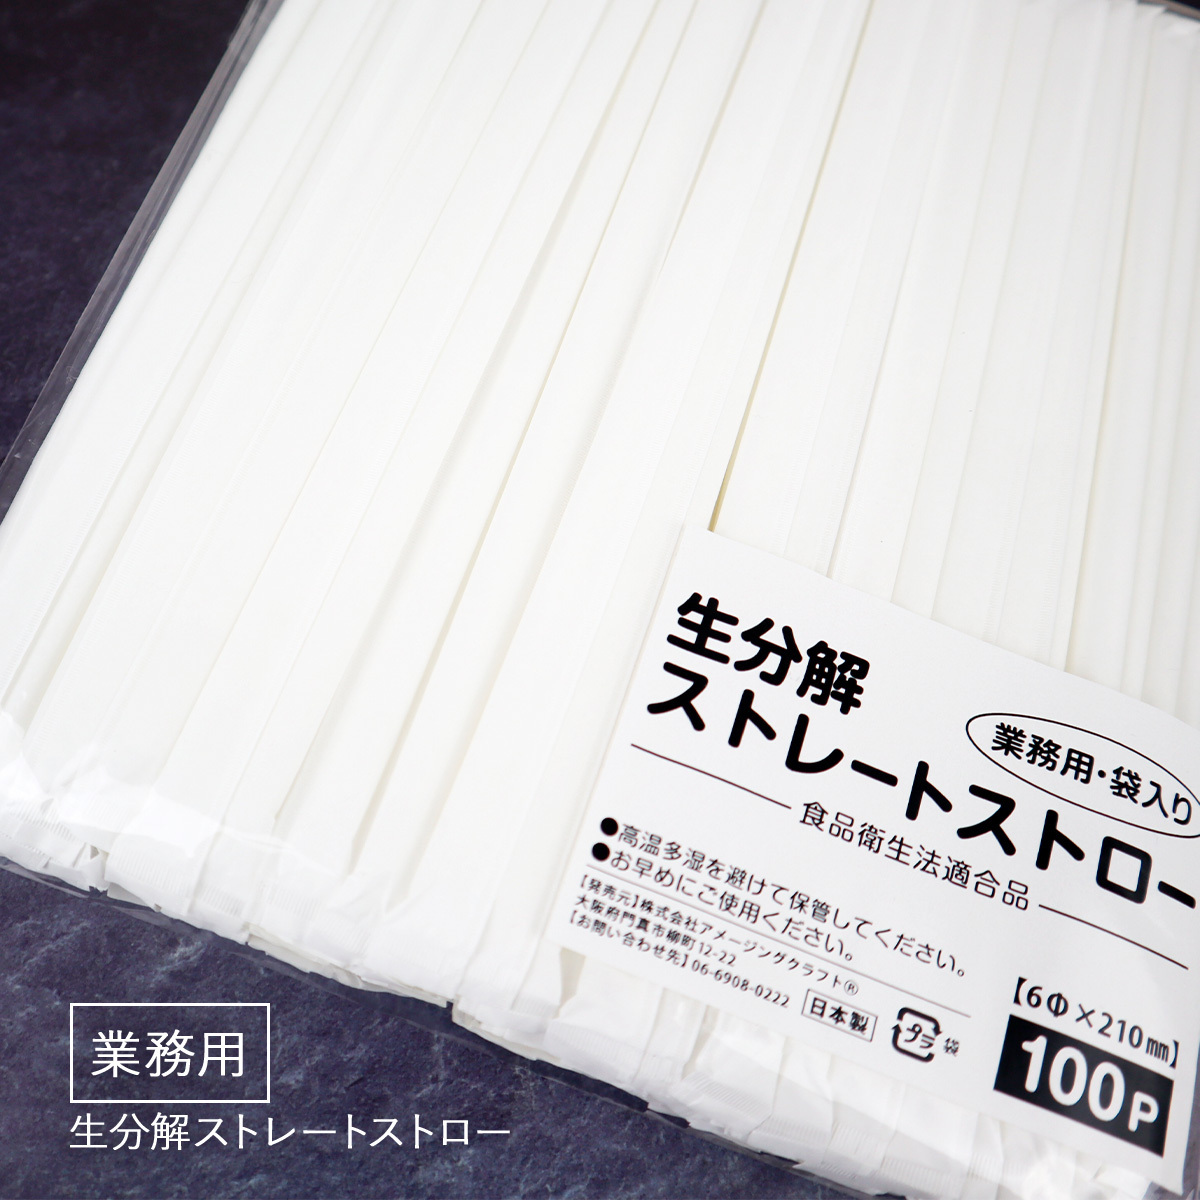 日本製 生分解ストロー 個包装 100本入り 業務用 直径6mm x 長さ210mm (21cm) ストレート 乳白色 エコ 生分解性ストロー_画像1